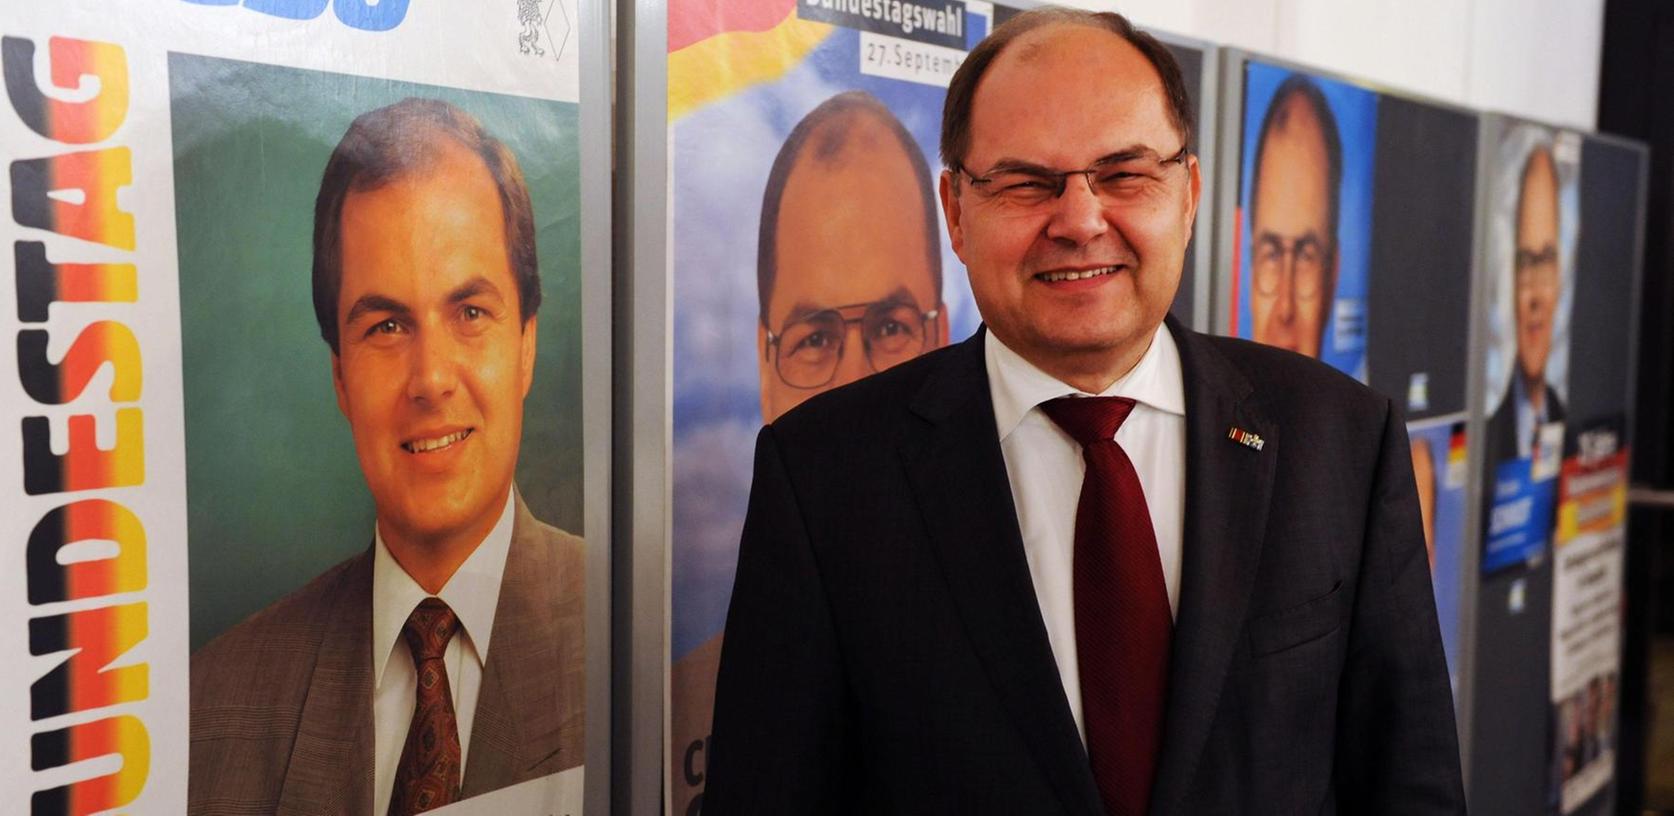 Christian Schmidt feiert 25 Jahre im Deutschen Bundestag 